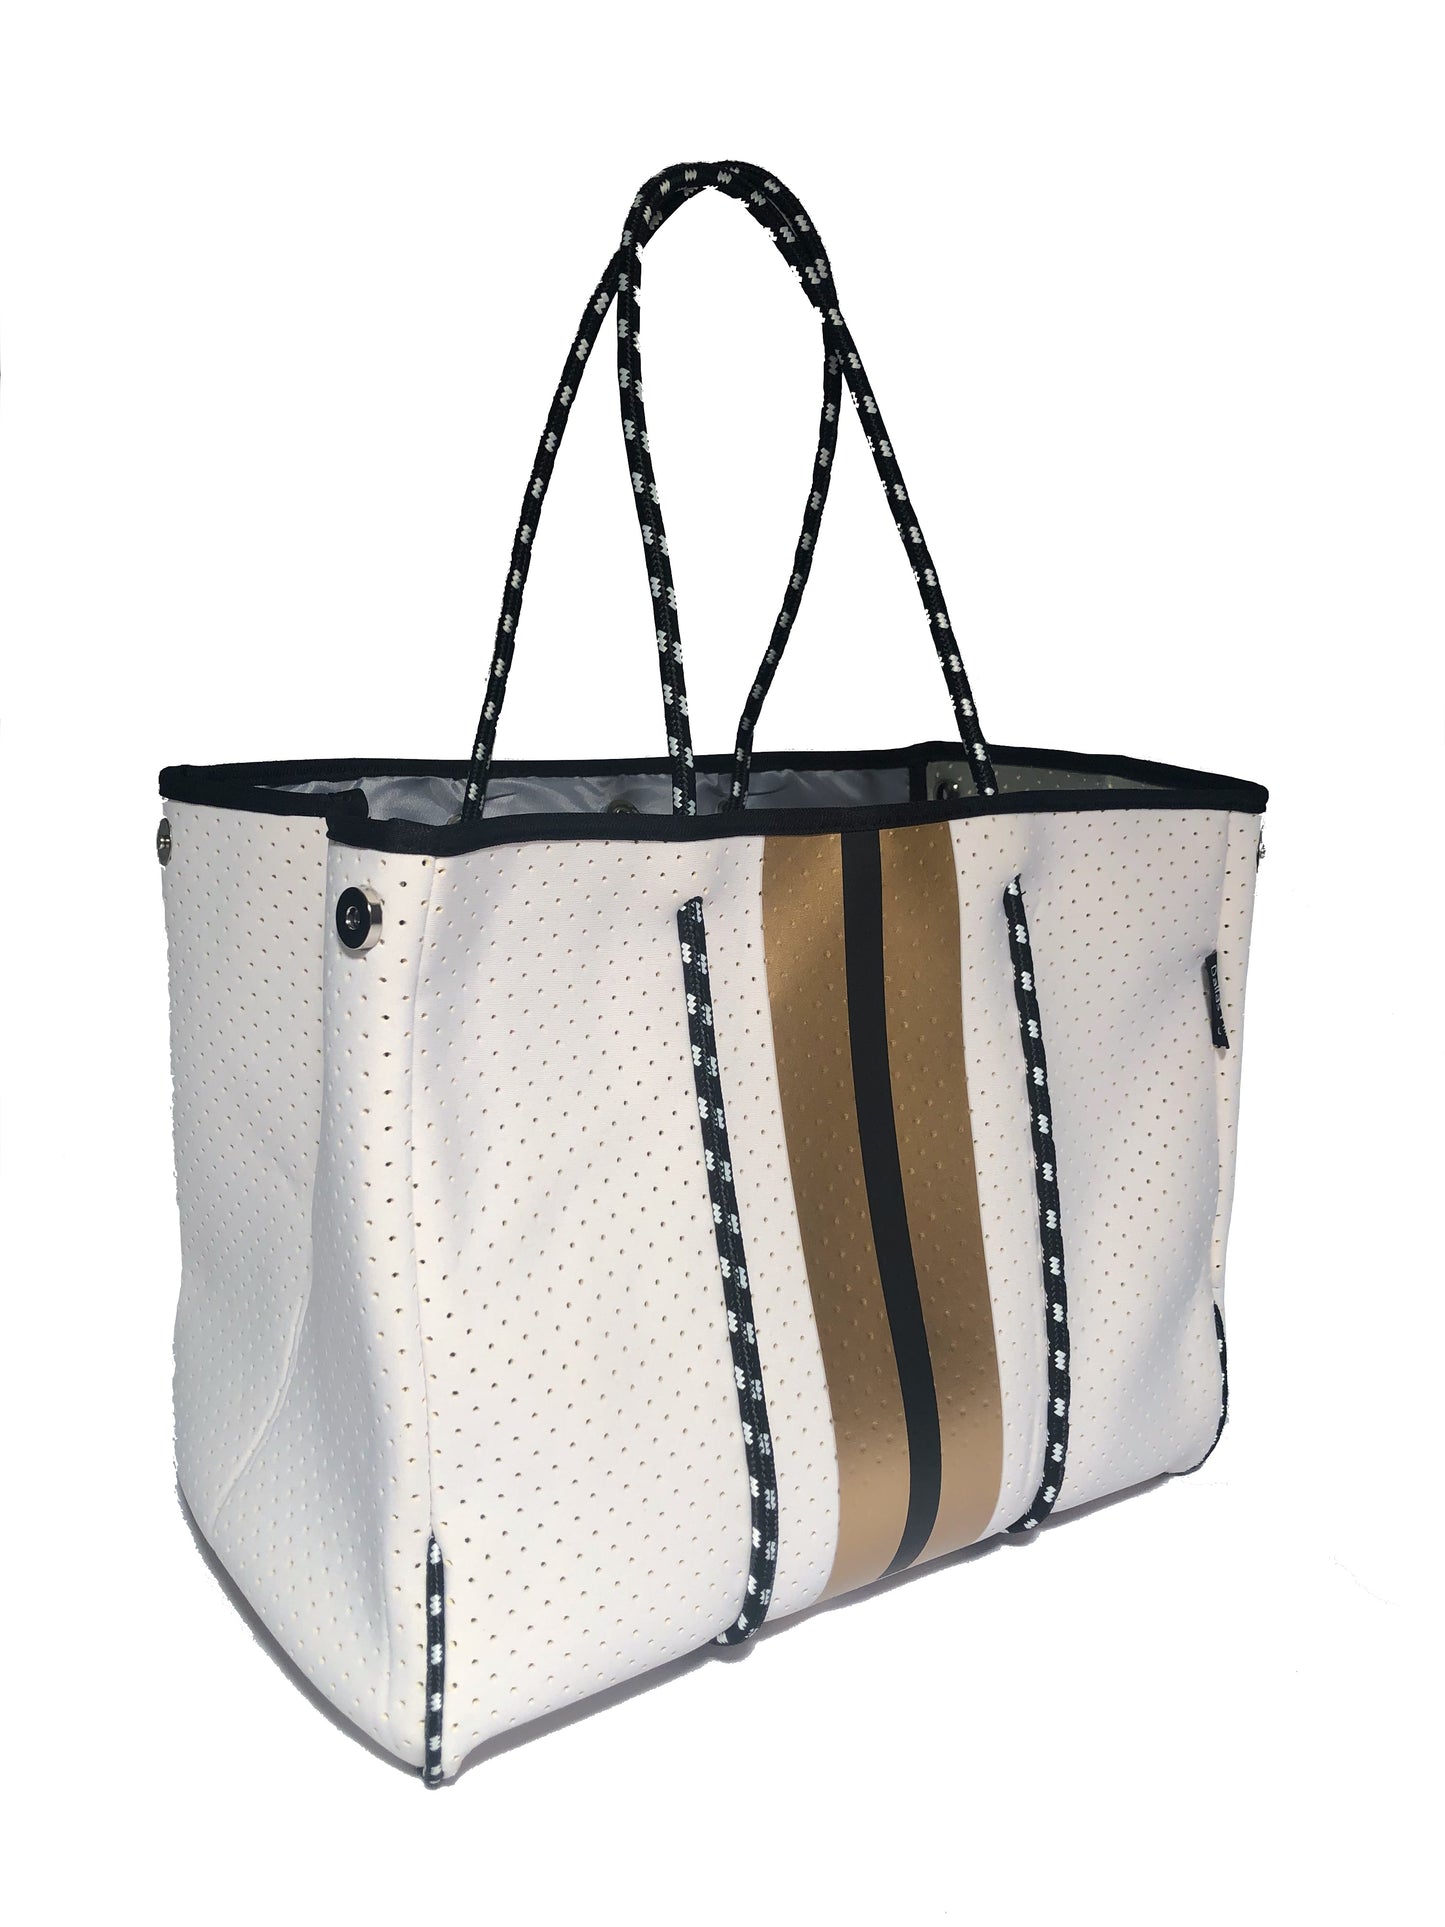 Neoprene Tote Bag White Black Gold Sripes by Dallas Hill Design